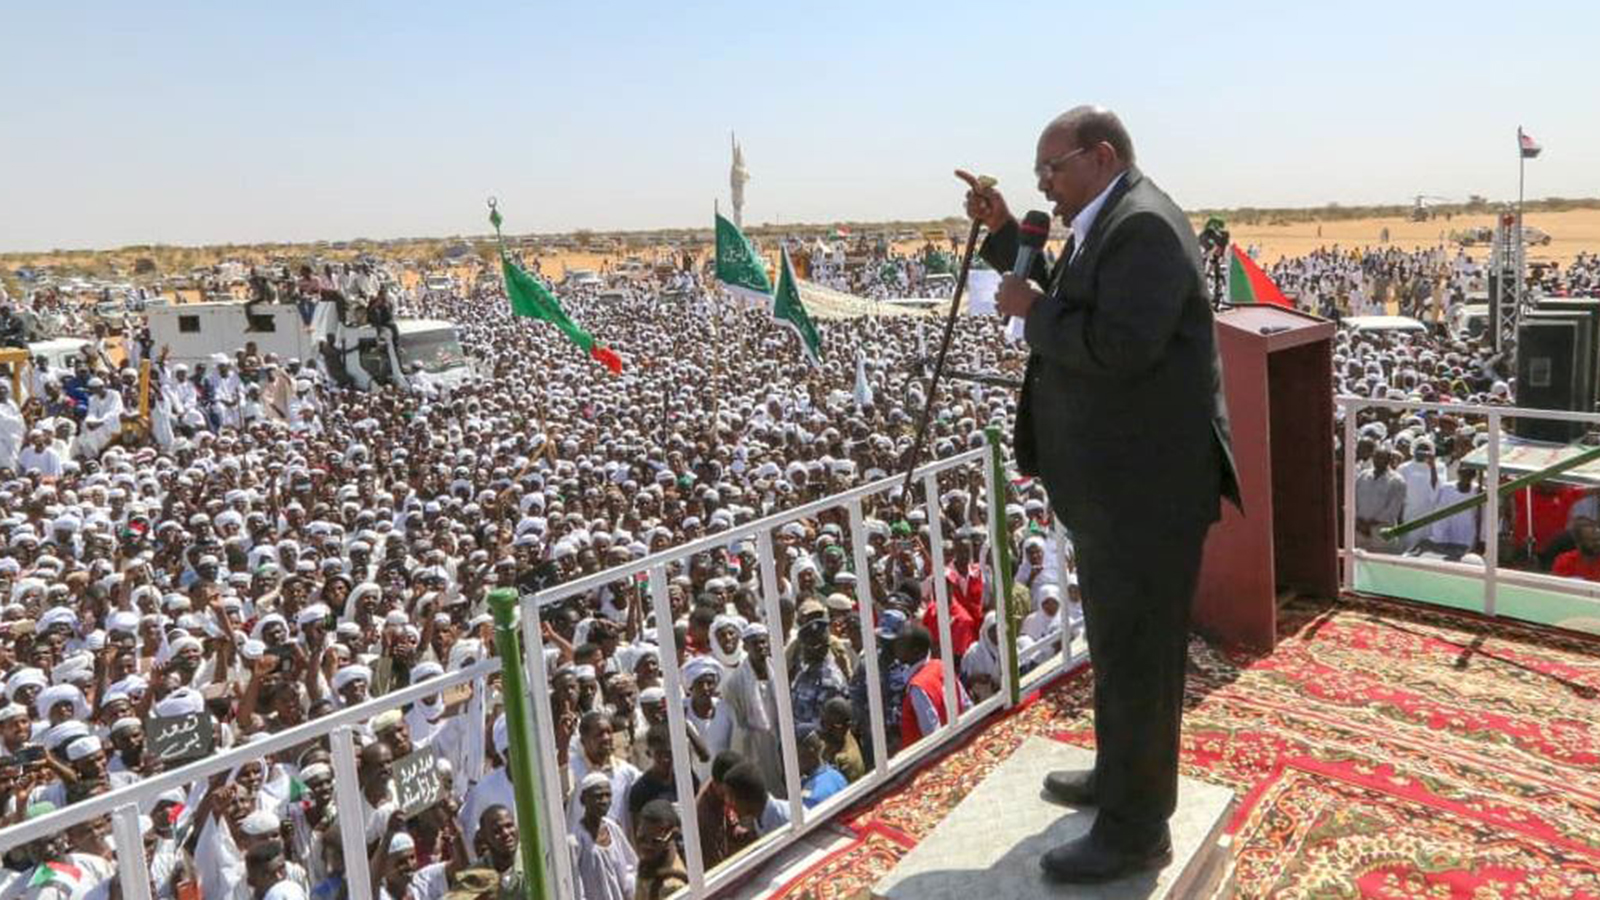 البشير أصبح أقل قدرة على توحيد الجماعات المحلية باستخدام التهديد من الصراعات لإجبار السودانيين على القبول الضمني على الأقل بحكمه العسكري